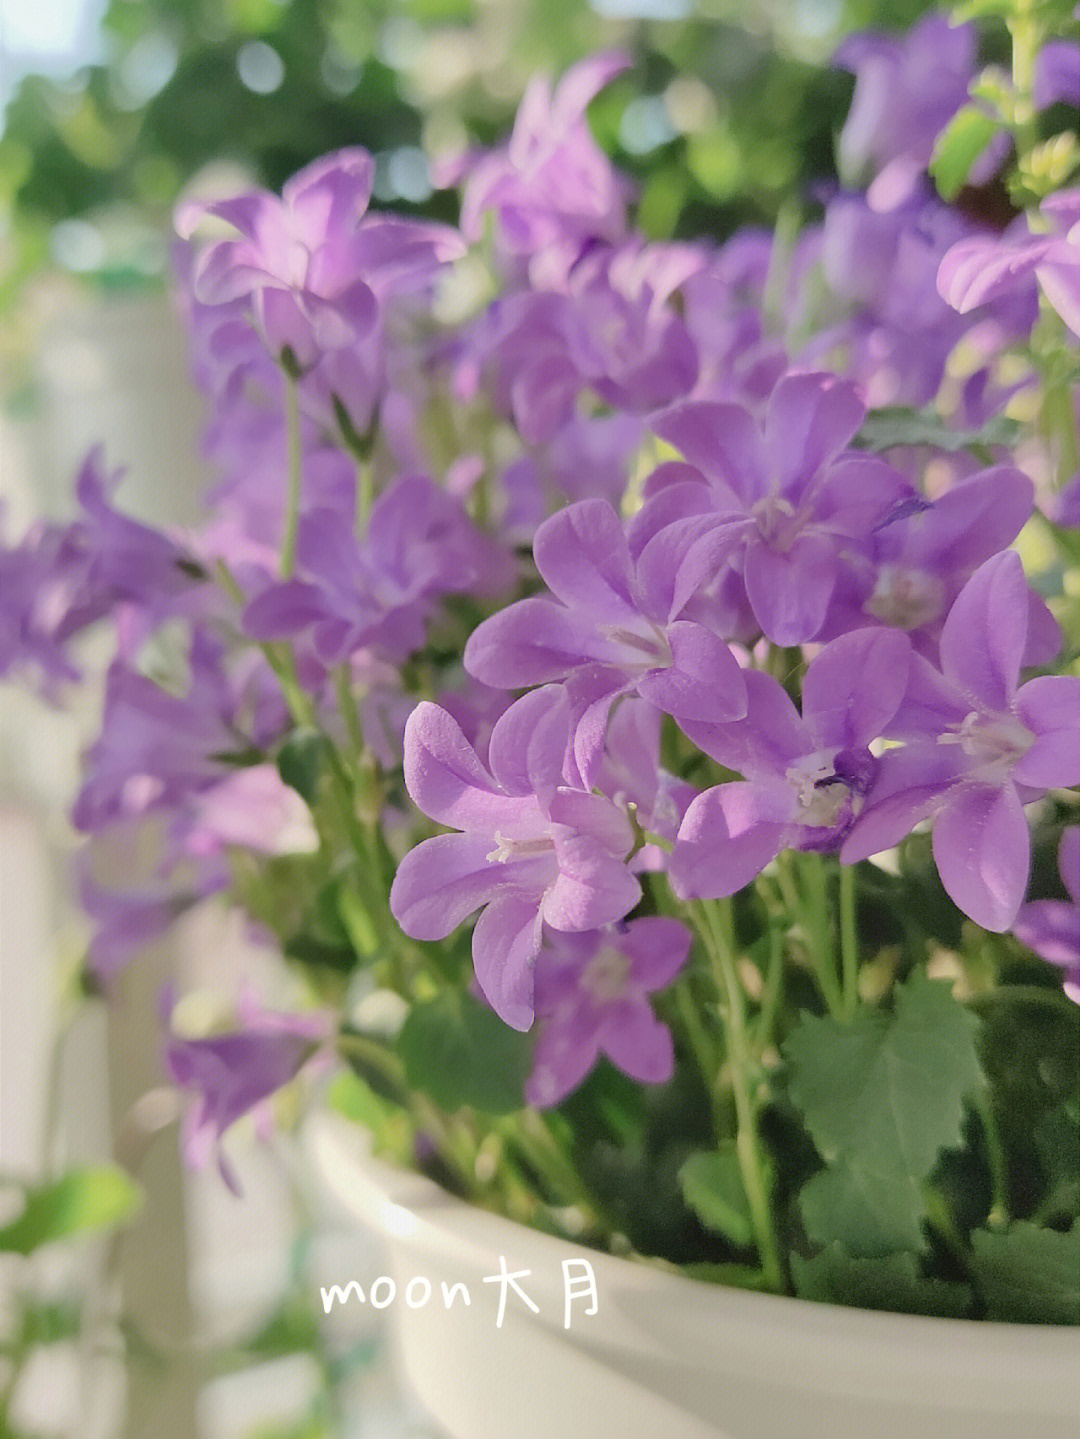 紫色风铃花的花语图片